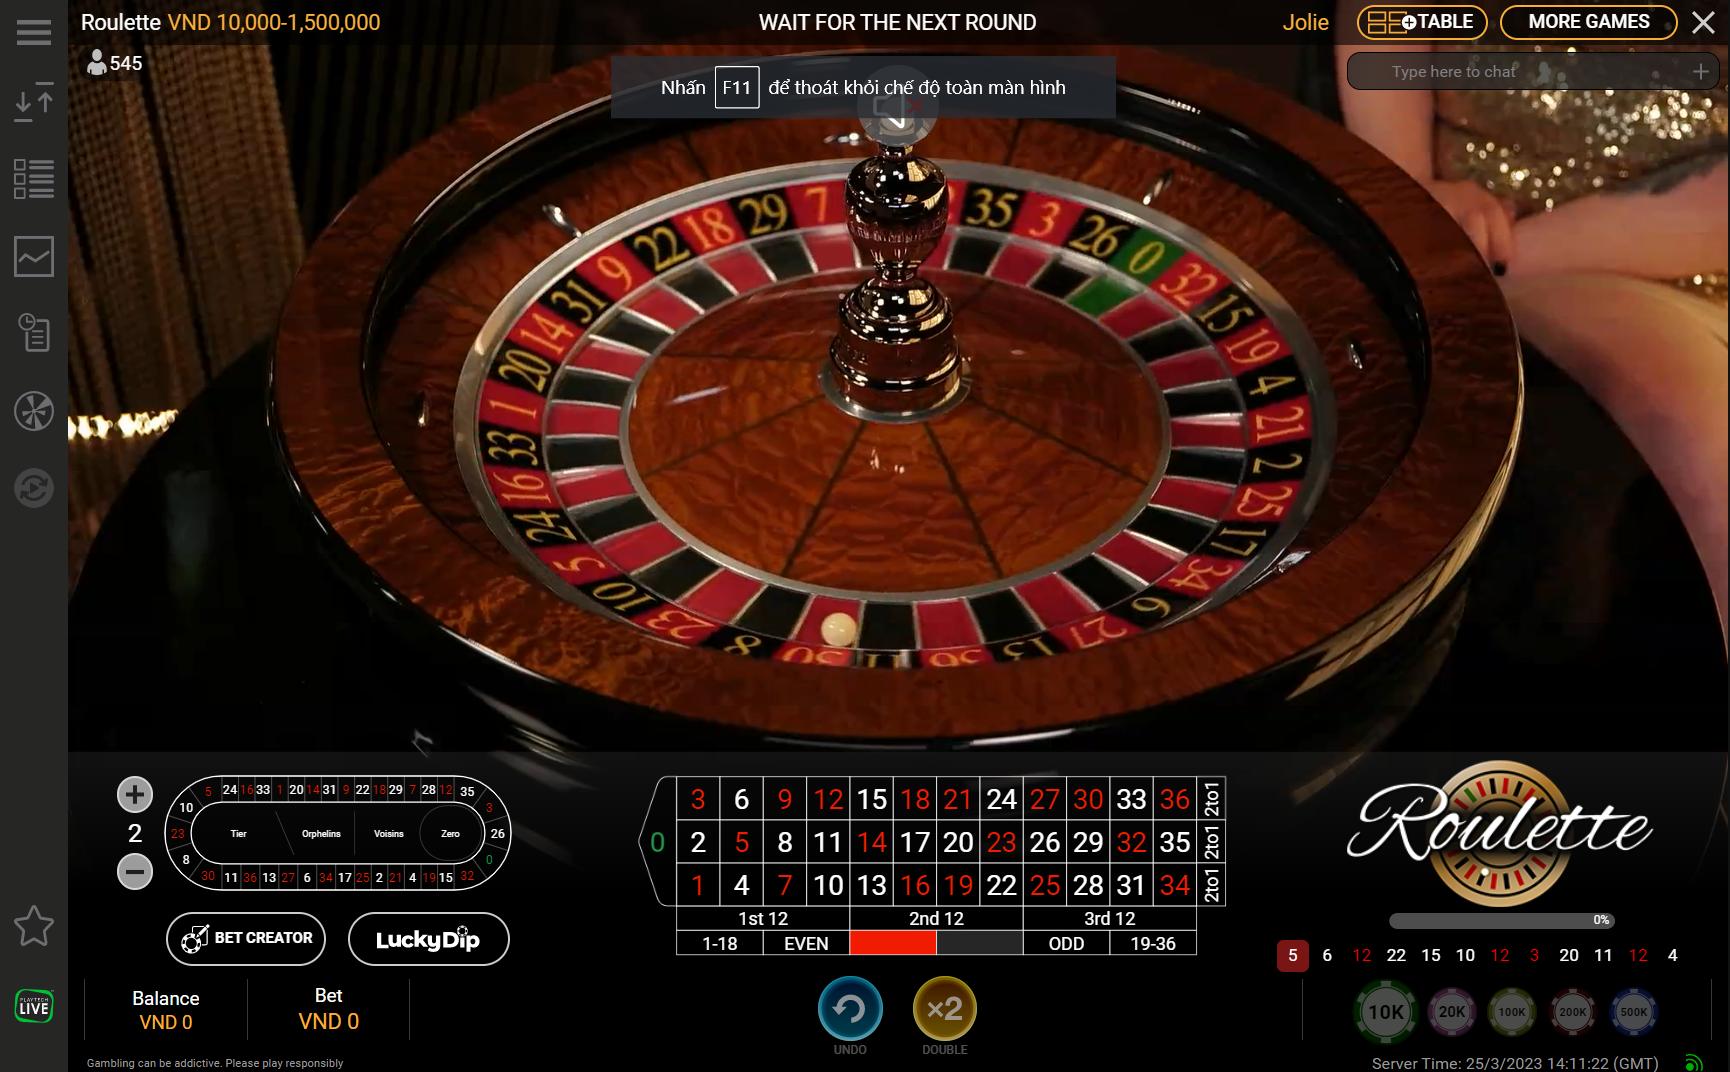 Sảnh chơi Roulette W88 thiết kế với giao diện độc đáo